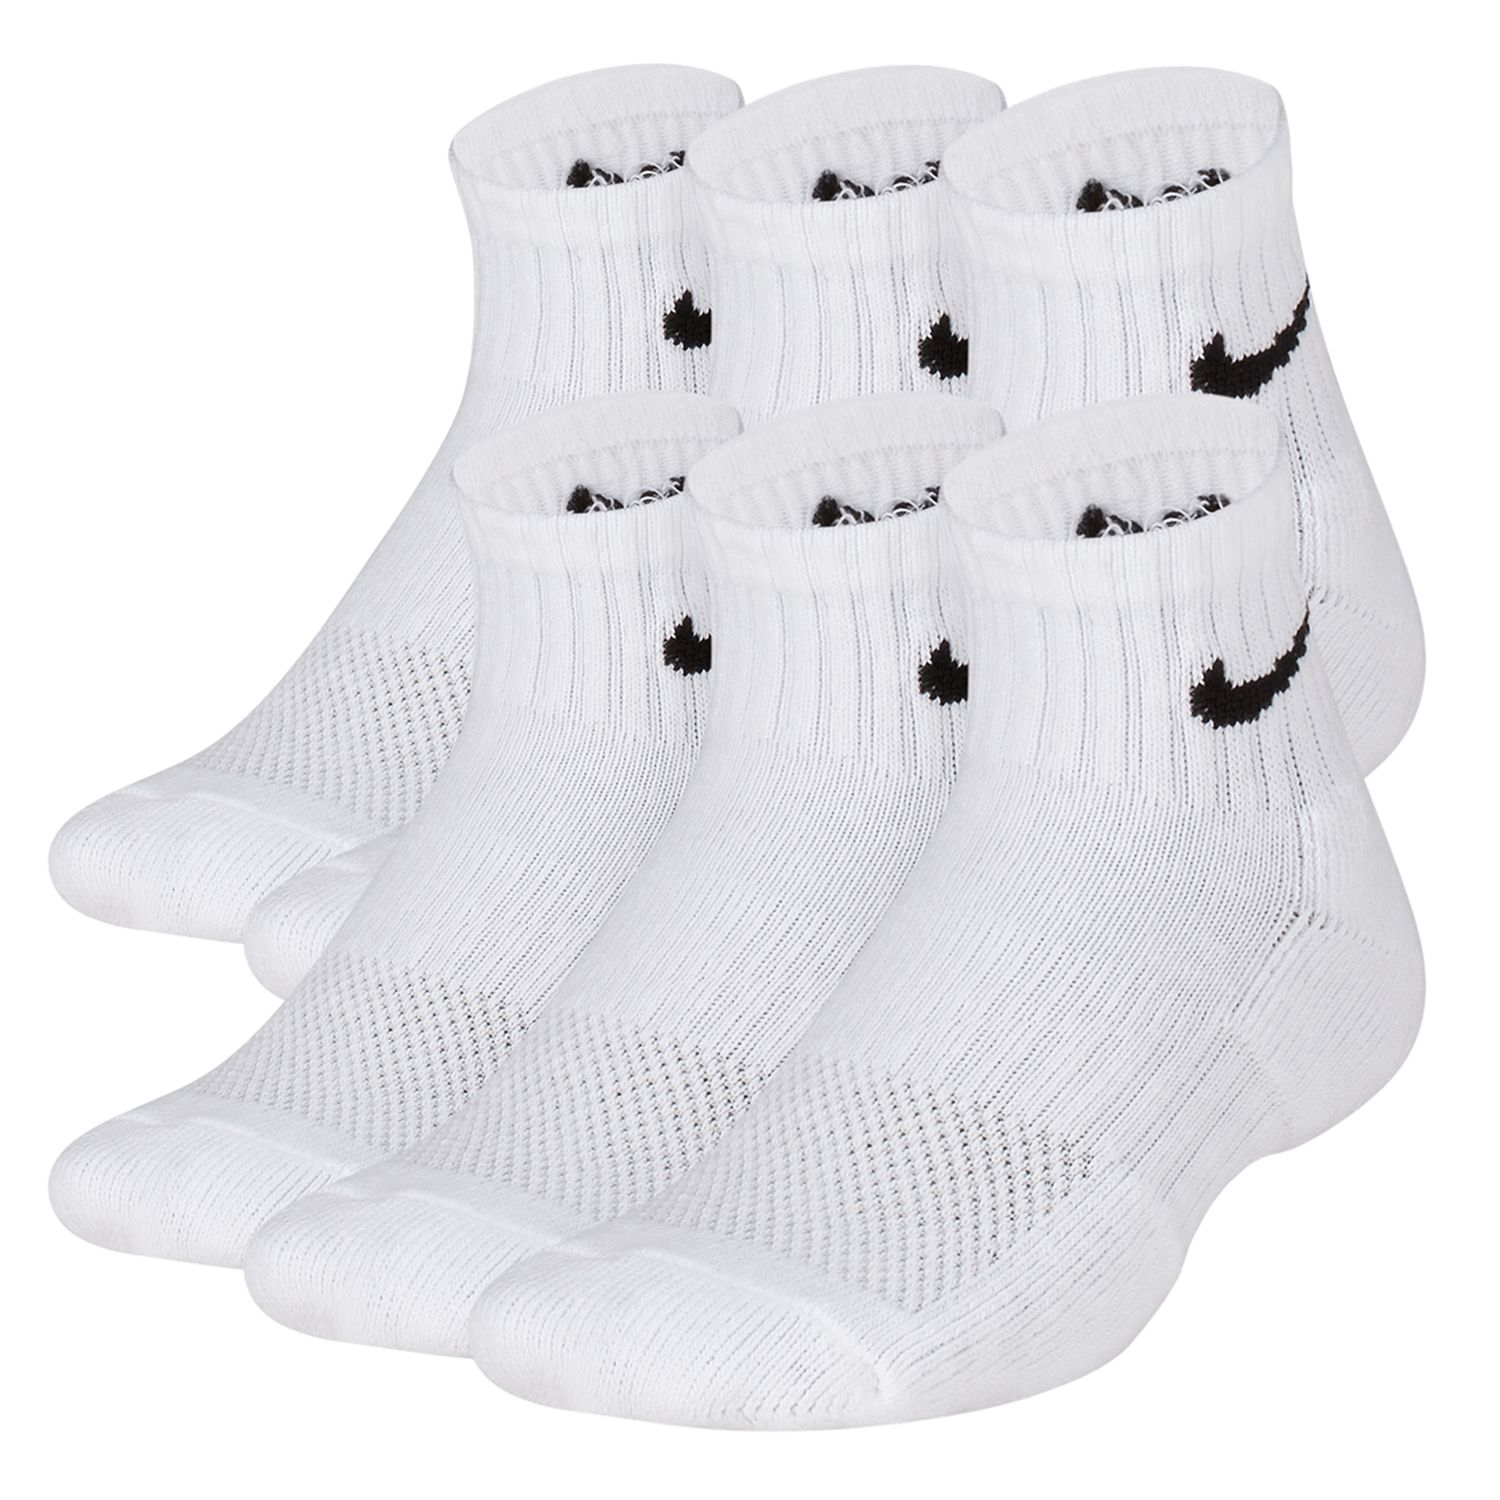 boys white nike socks